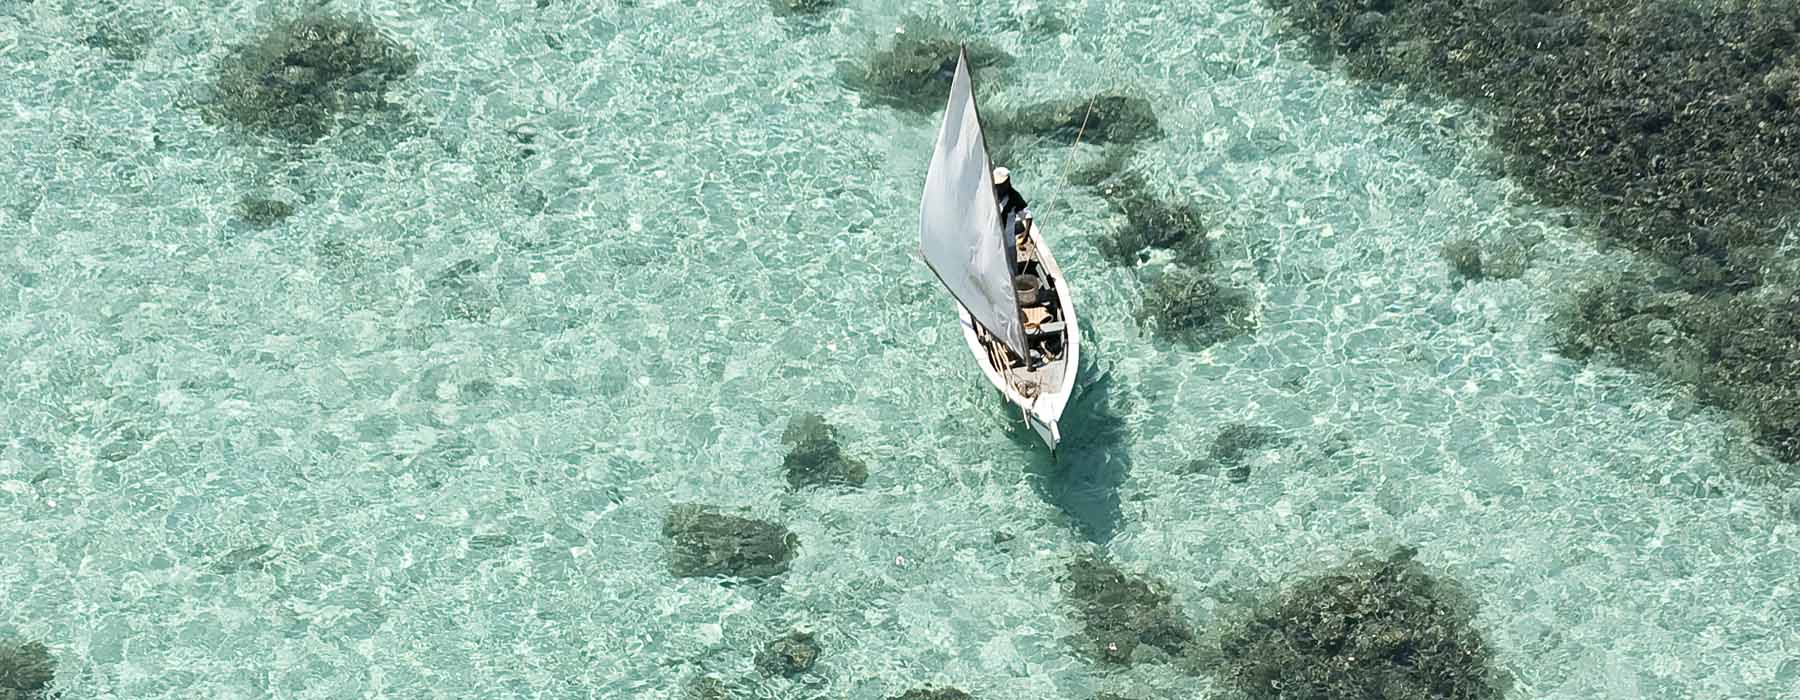 Mauritius<br class="hidden-md hidden-lg" /> Beach Holidays